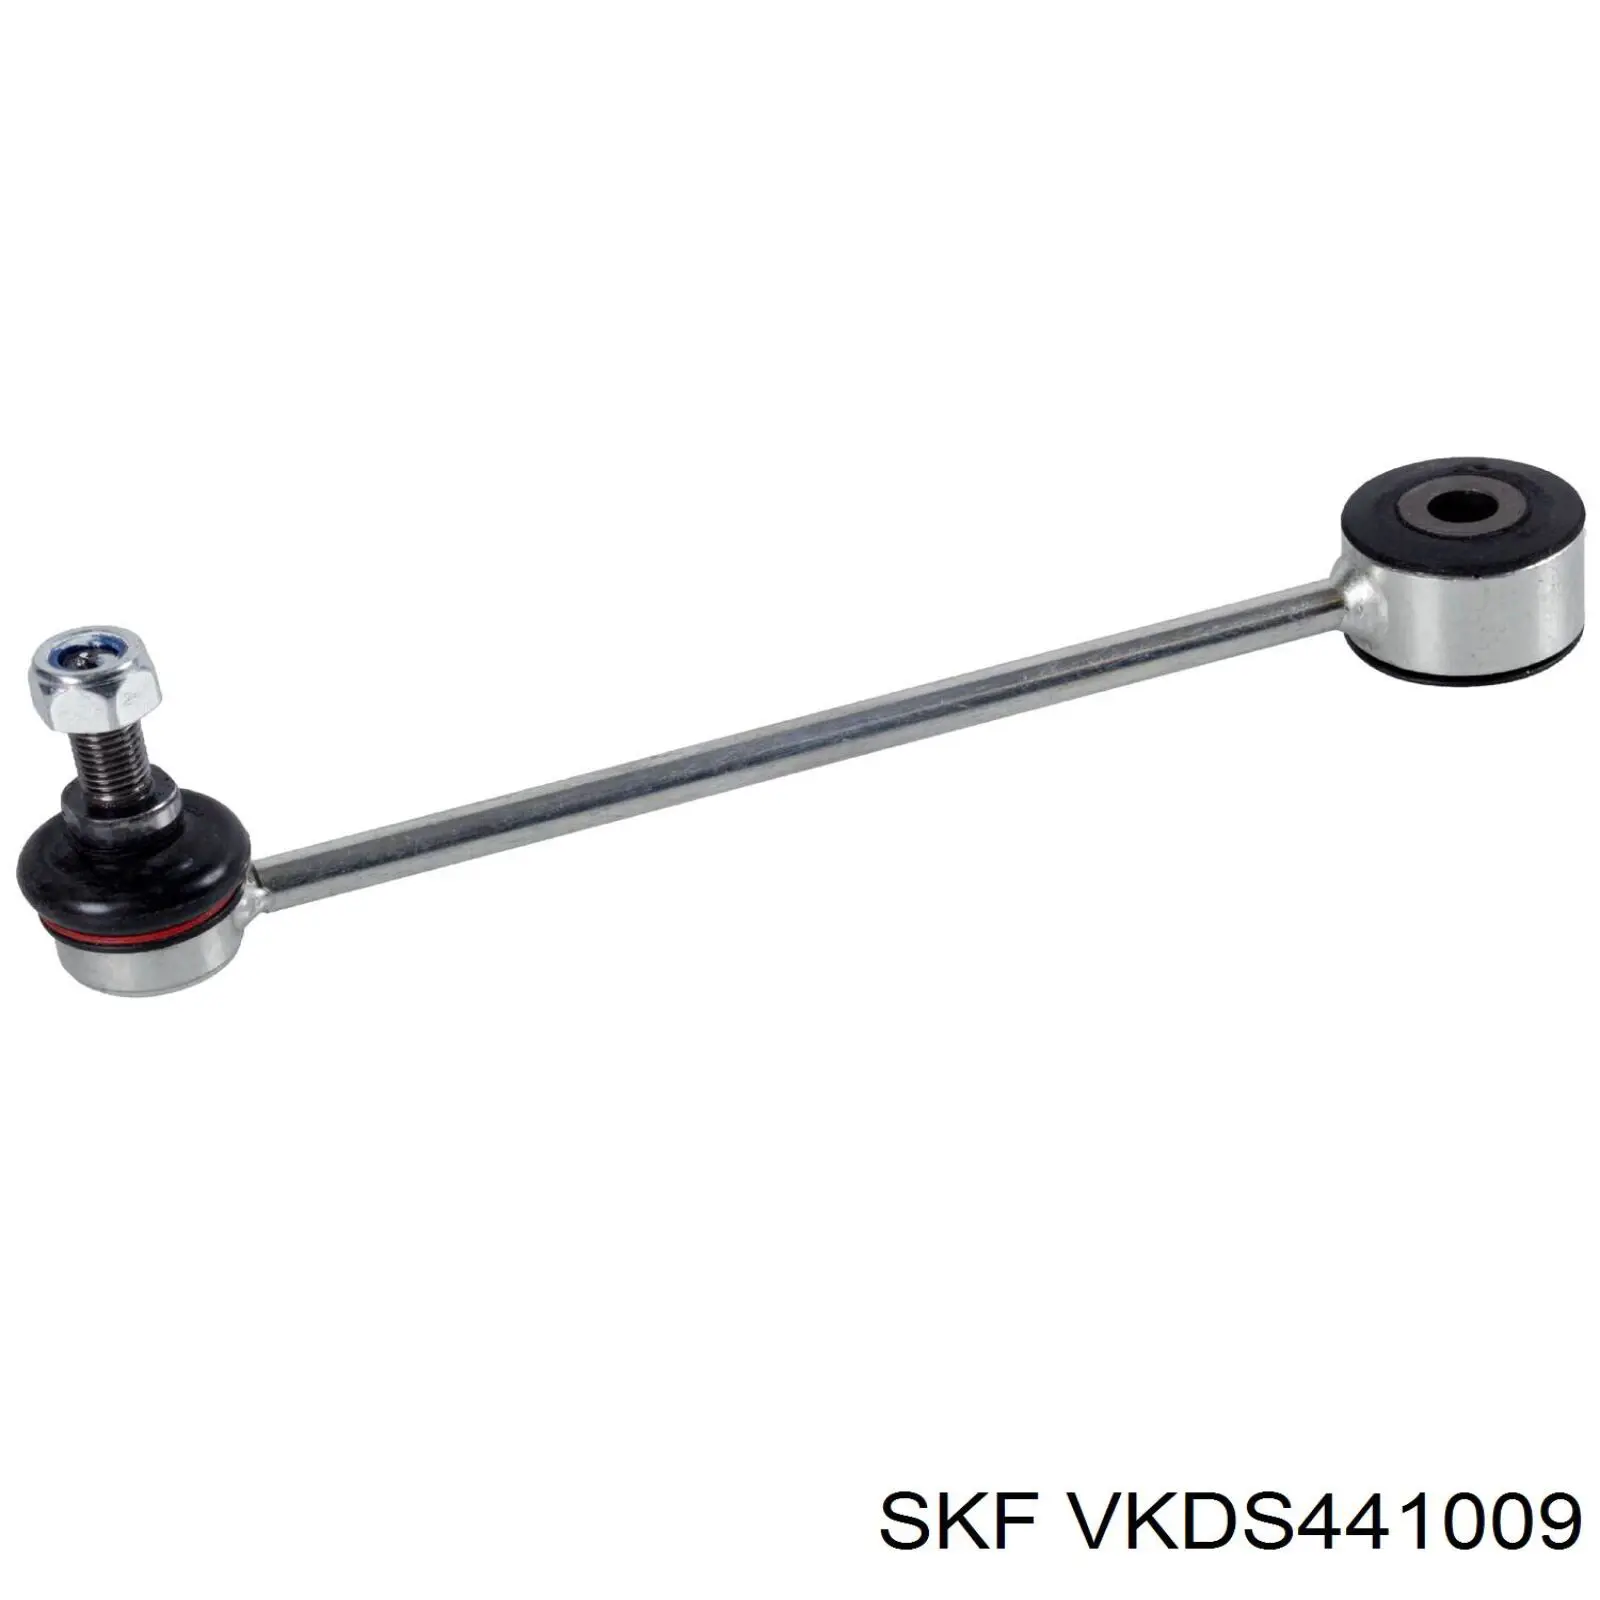 VKDS 441009 SKF soporte de barra estabilizadora trasera